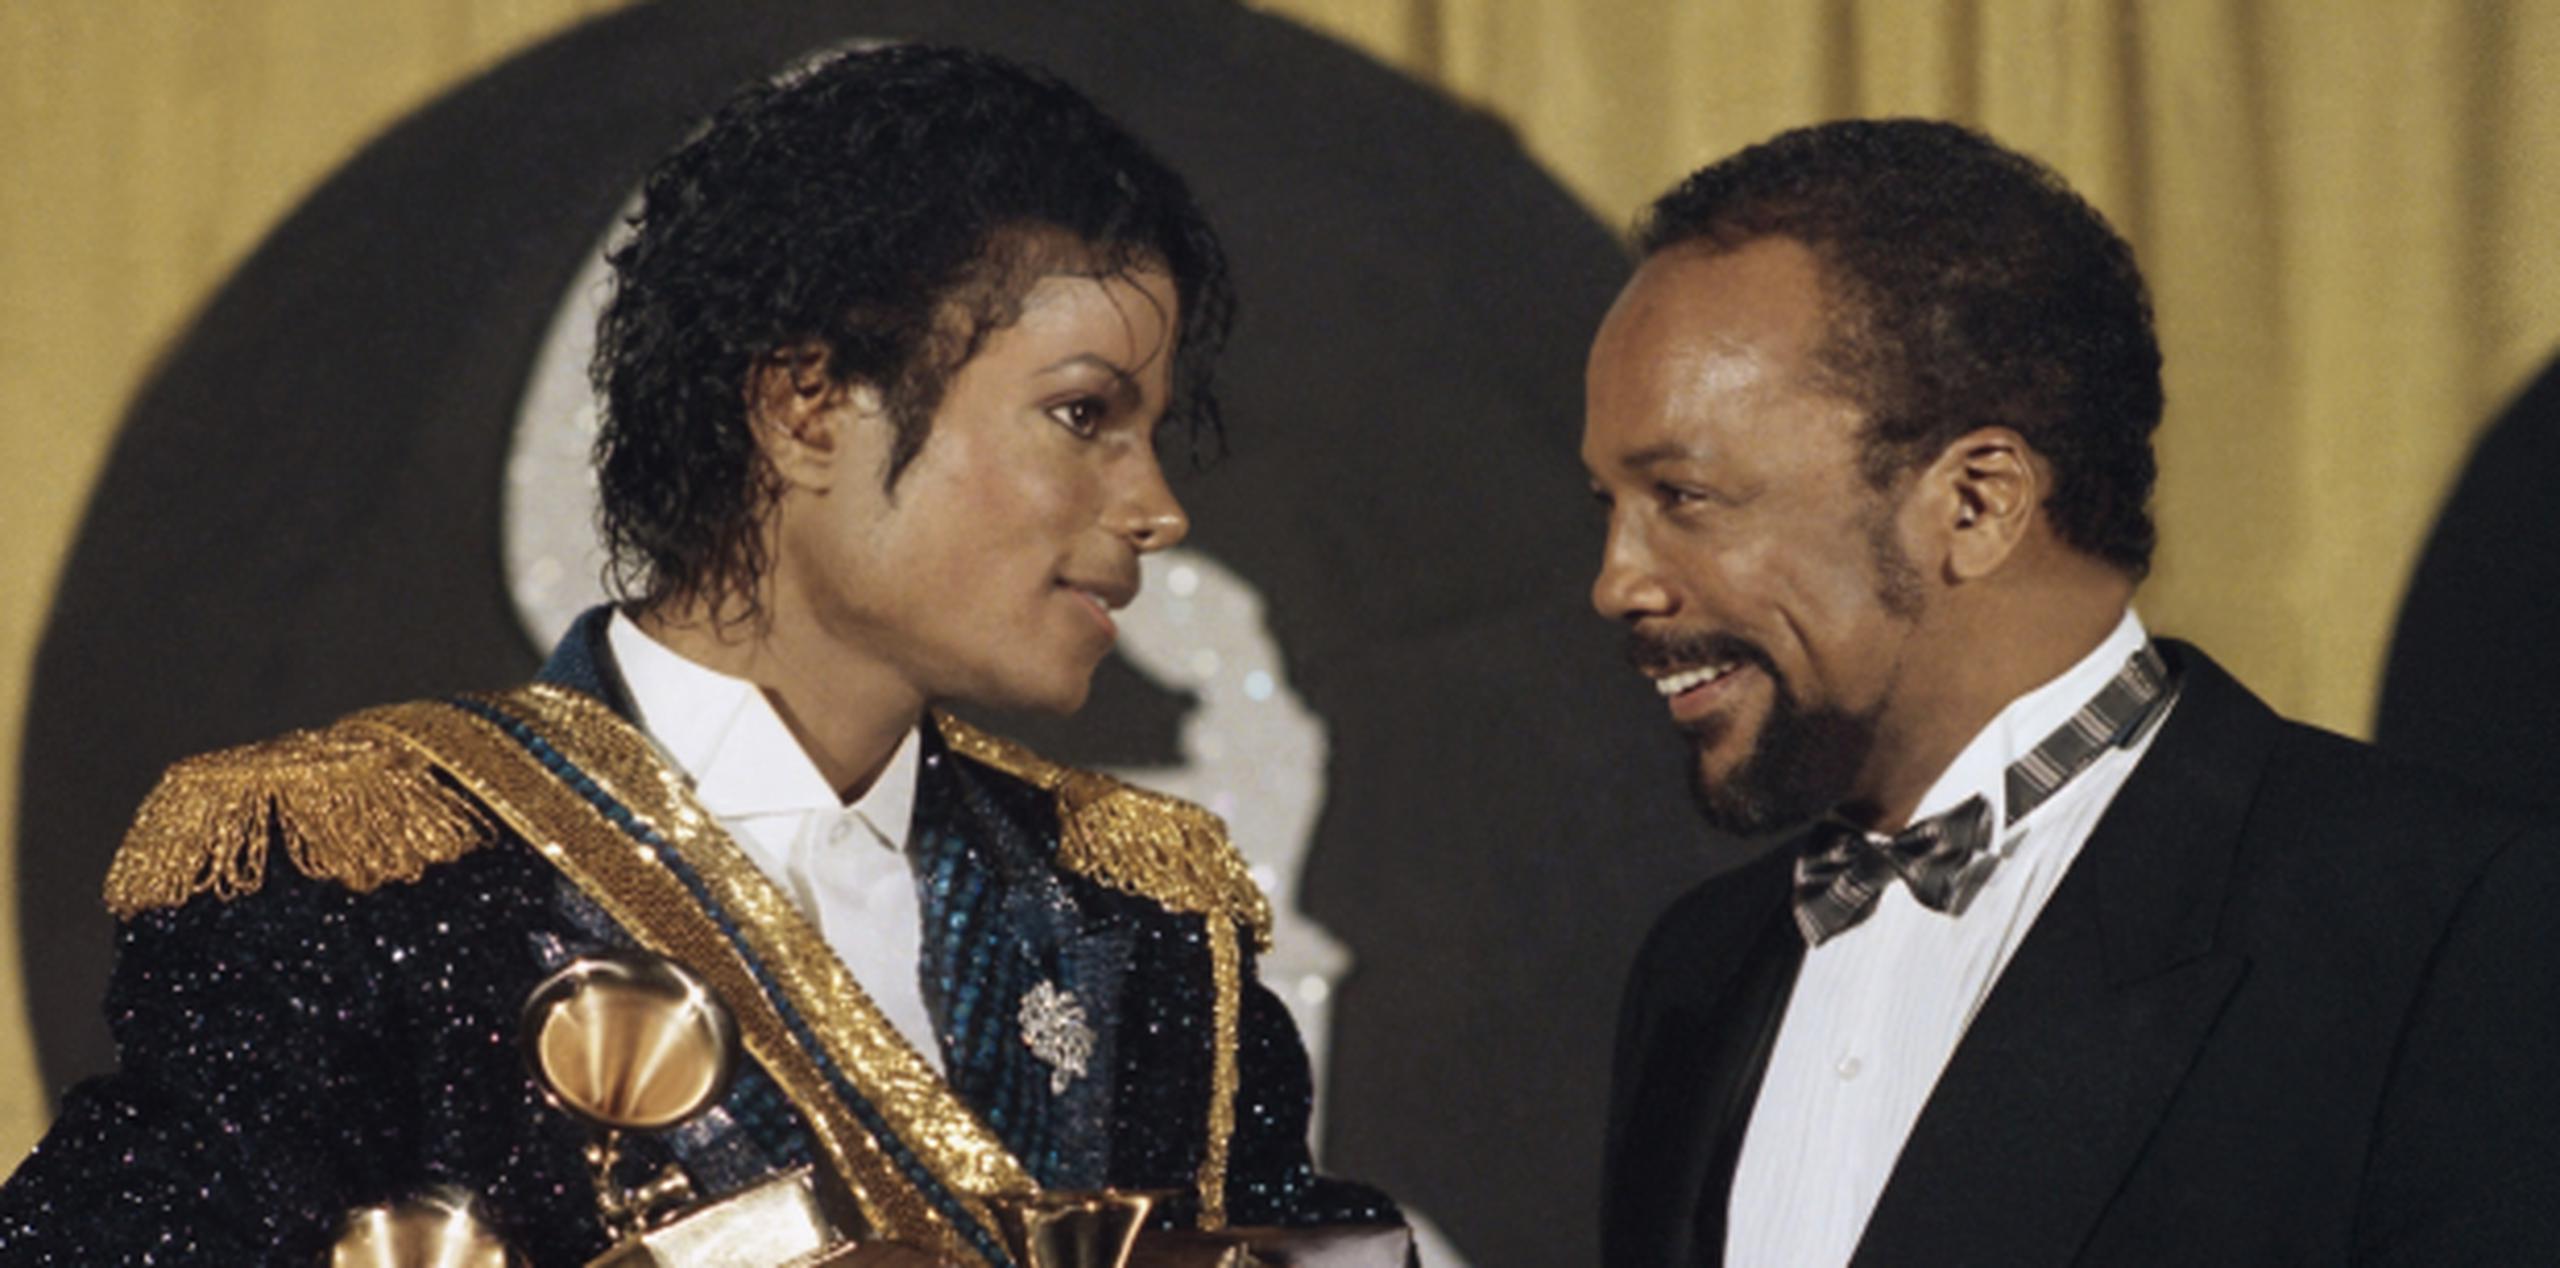 El álbum Thriller obtuvo ocho premios Grammy en el 1984, incluyendo el de Álbum del Año. (Archivo)